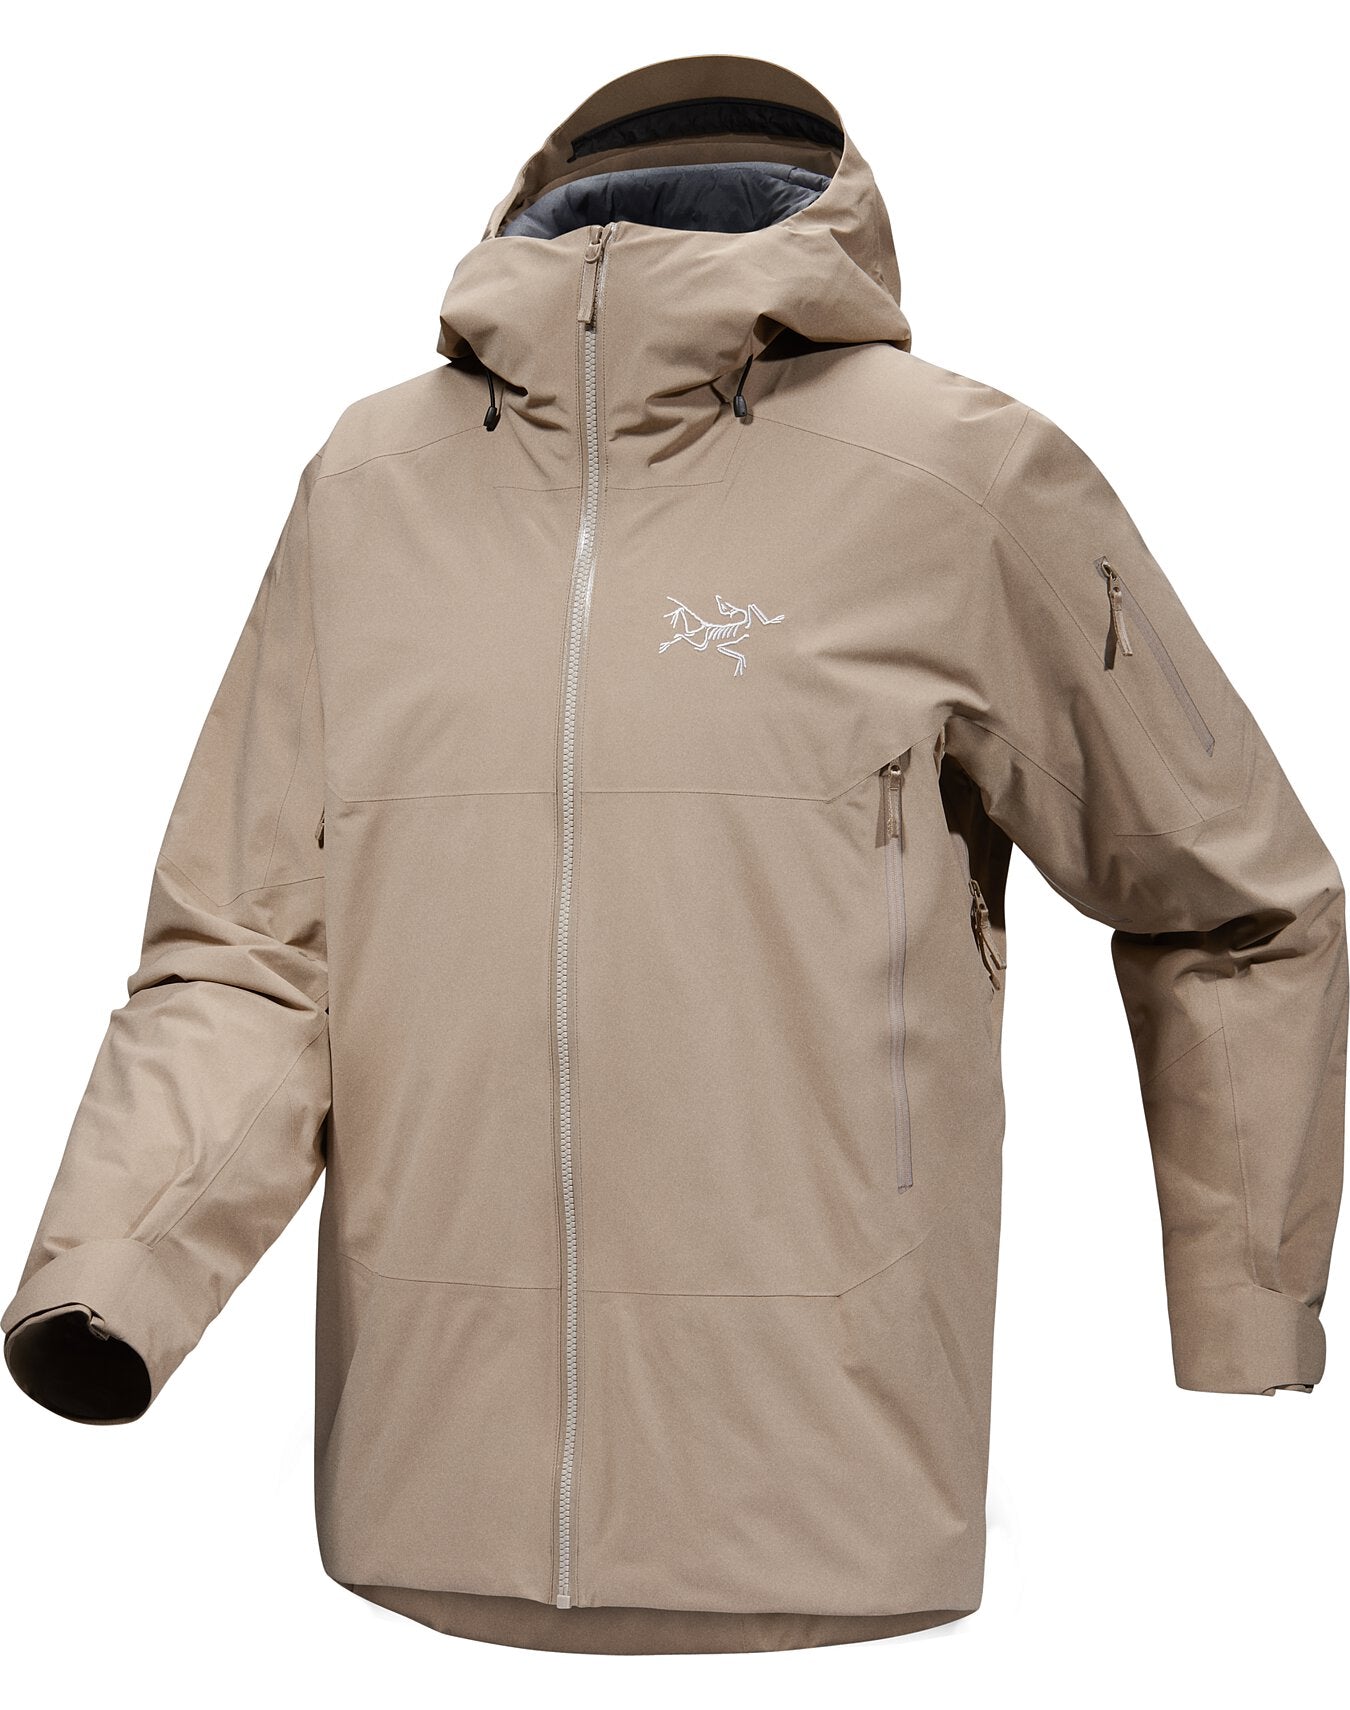 Arc'teryx Men's Sabre Insulated Jacket – Skier's Sportshop